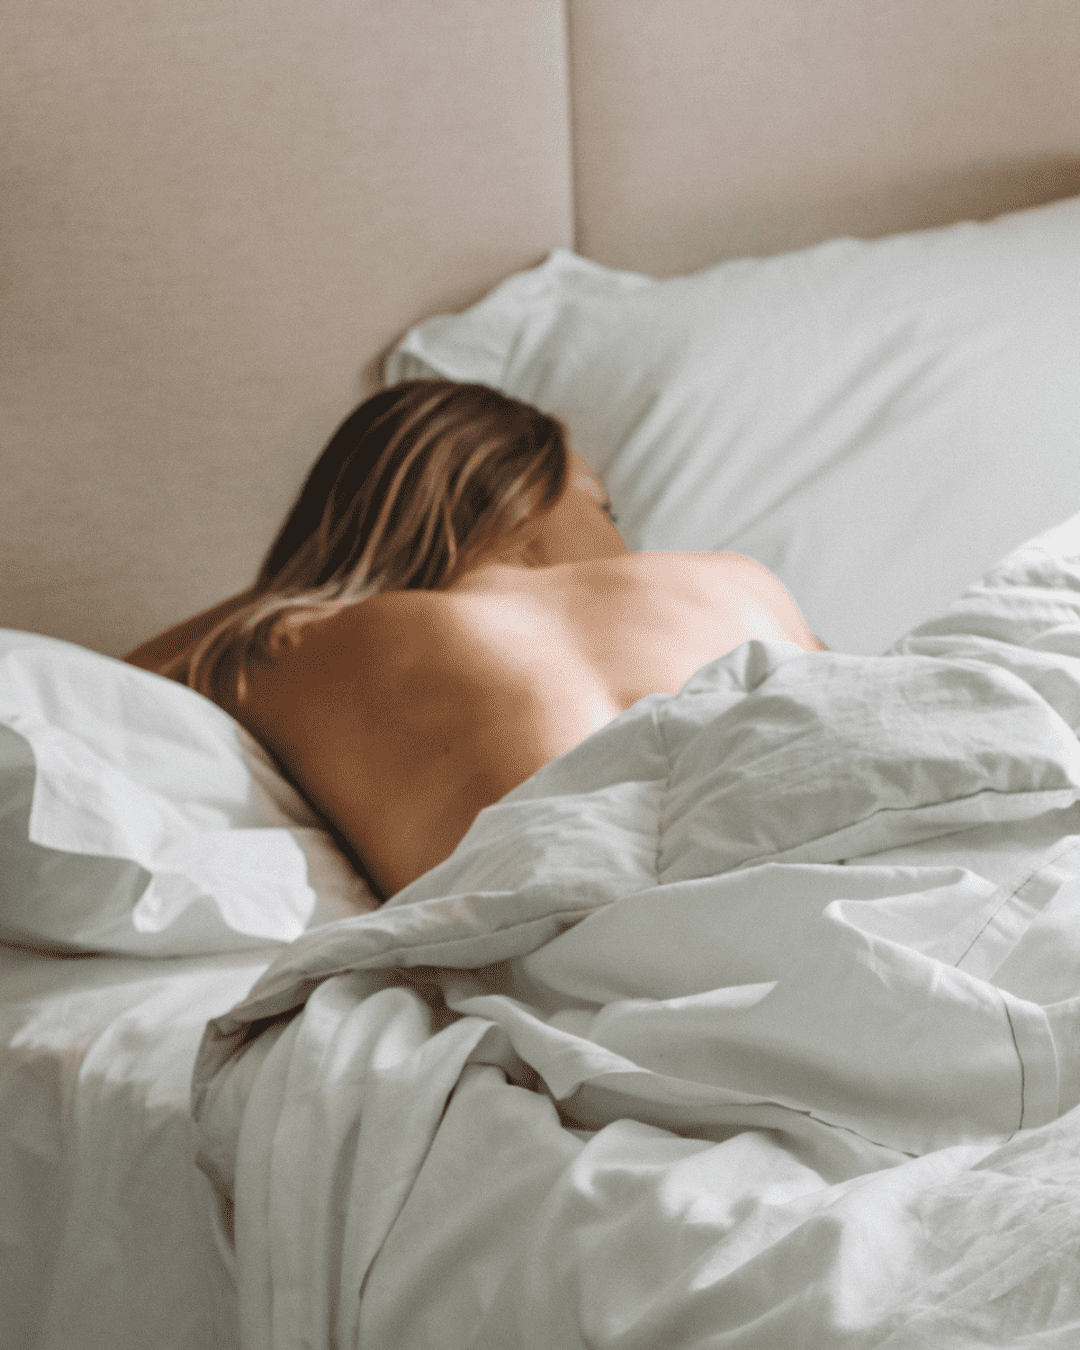 Article : Sommeil et beauté : notre routine pour bien dormir